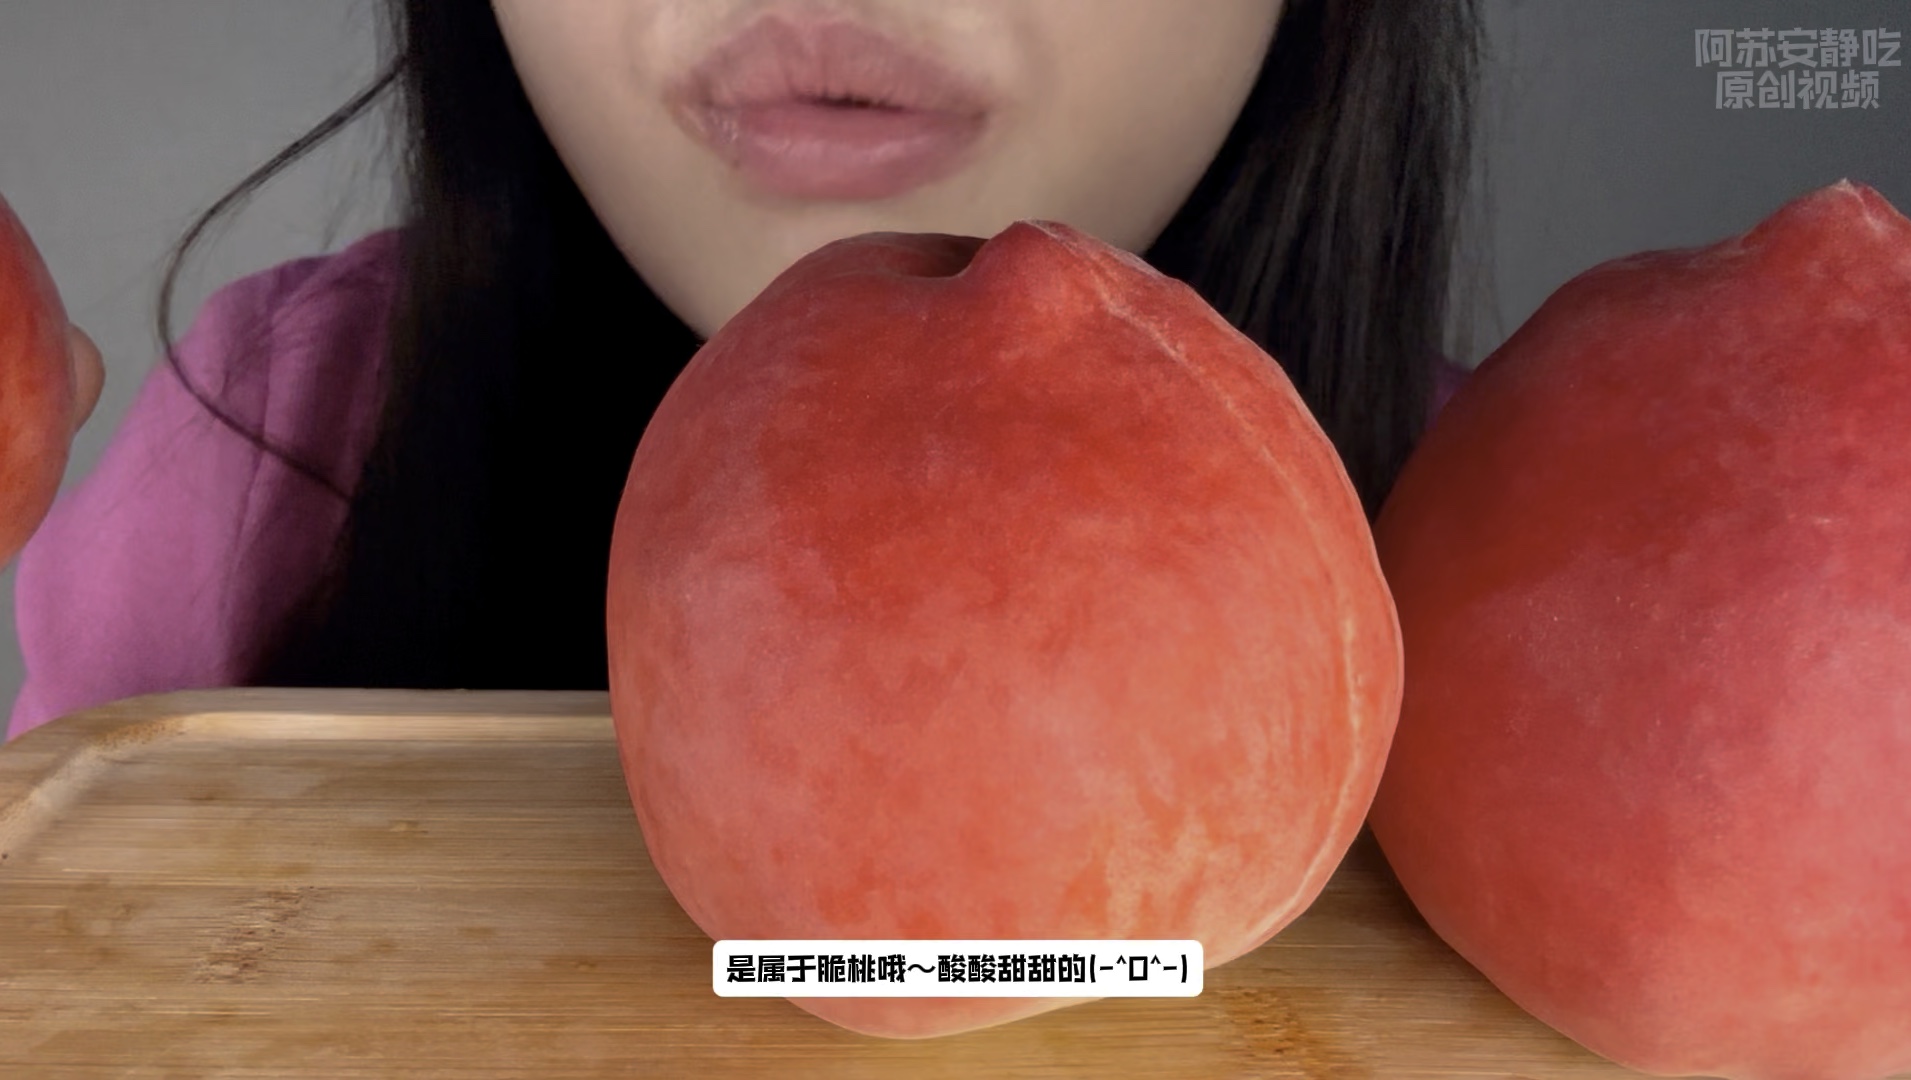 浅浅的吃个桃子吧